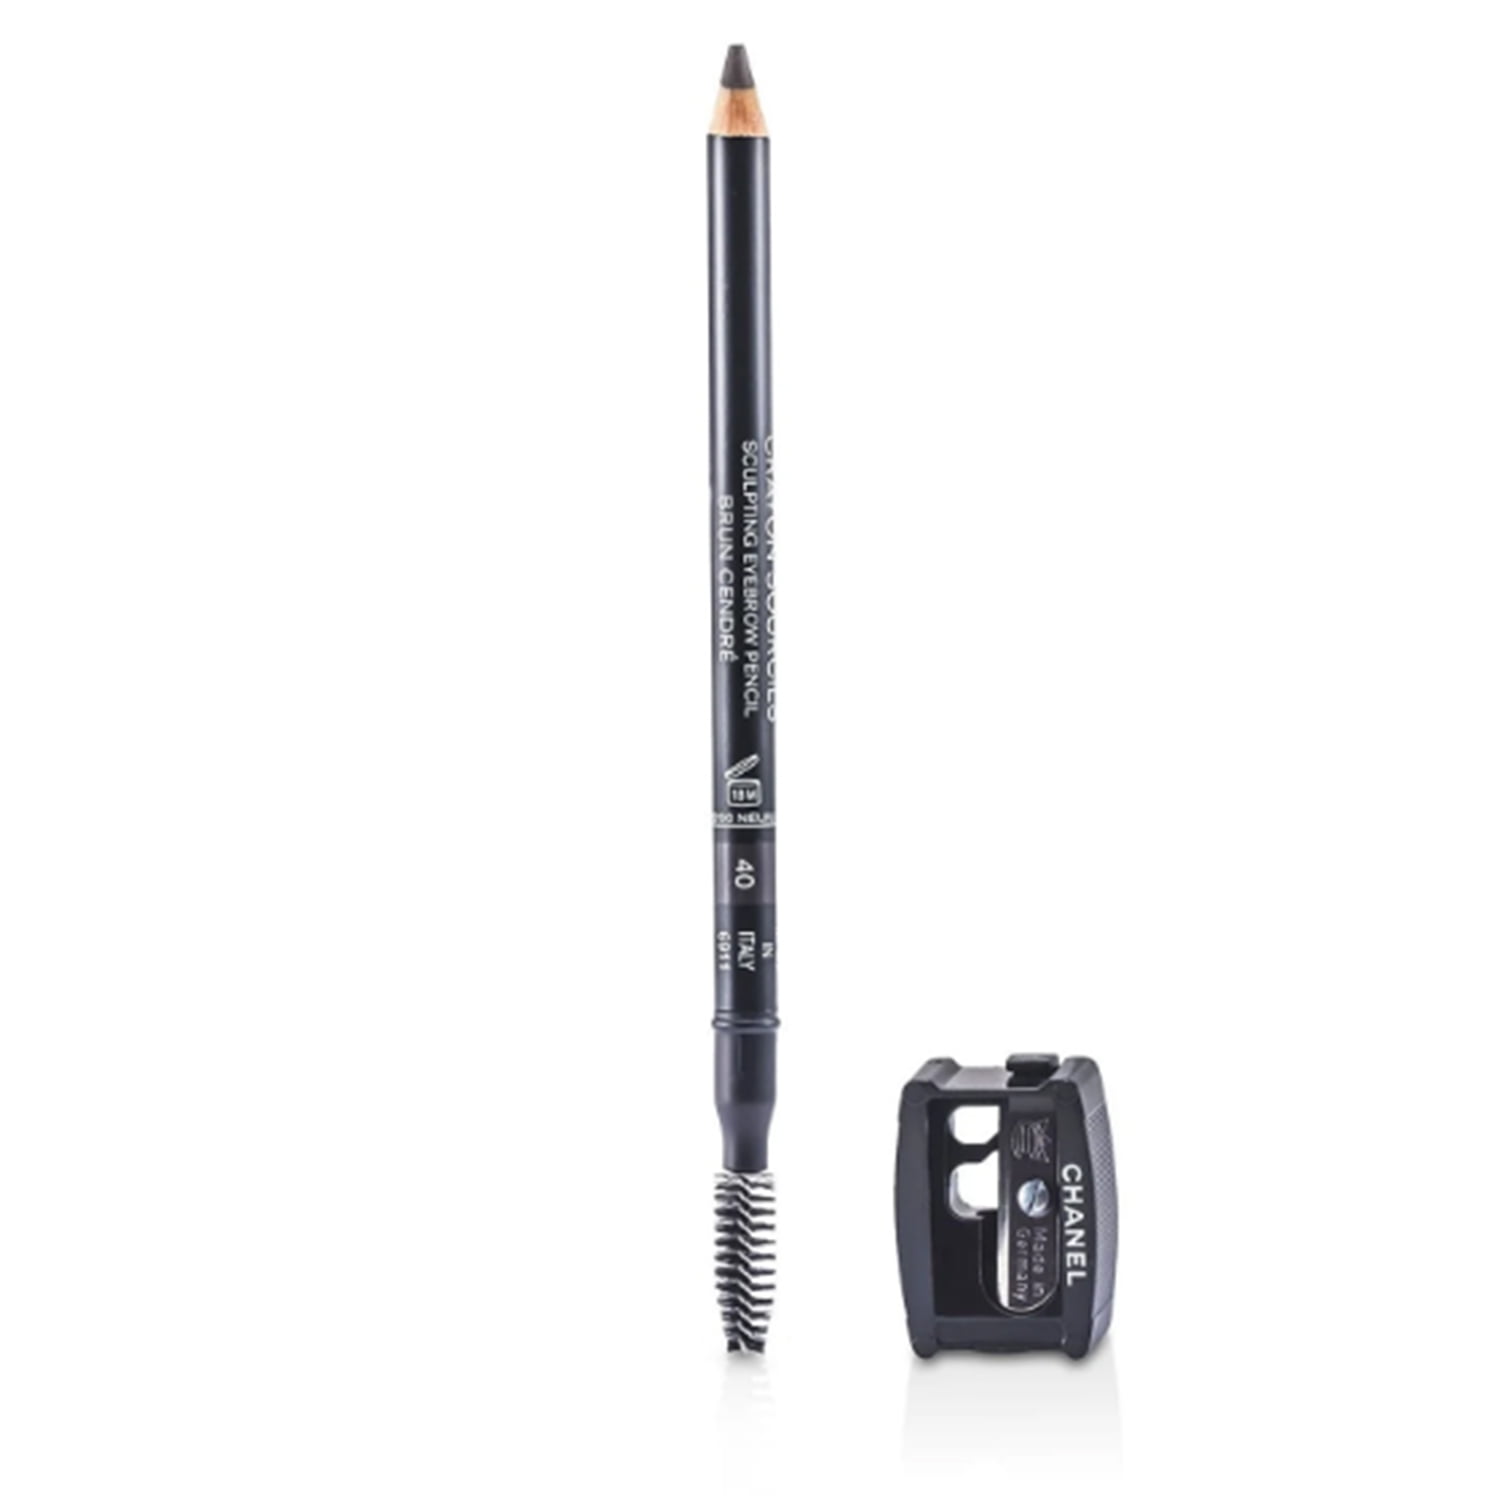 Chanel Crayon Sourcils Sculpting Eyebrow Pencil - # 30 Brun